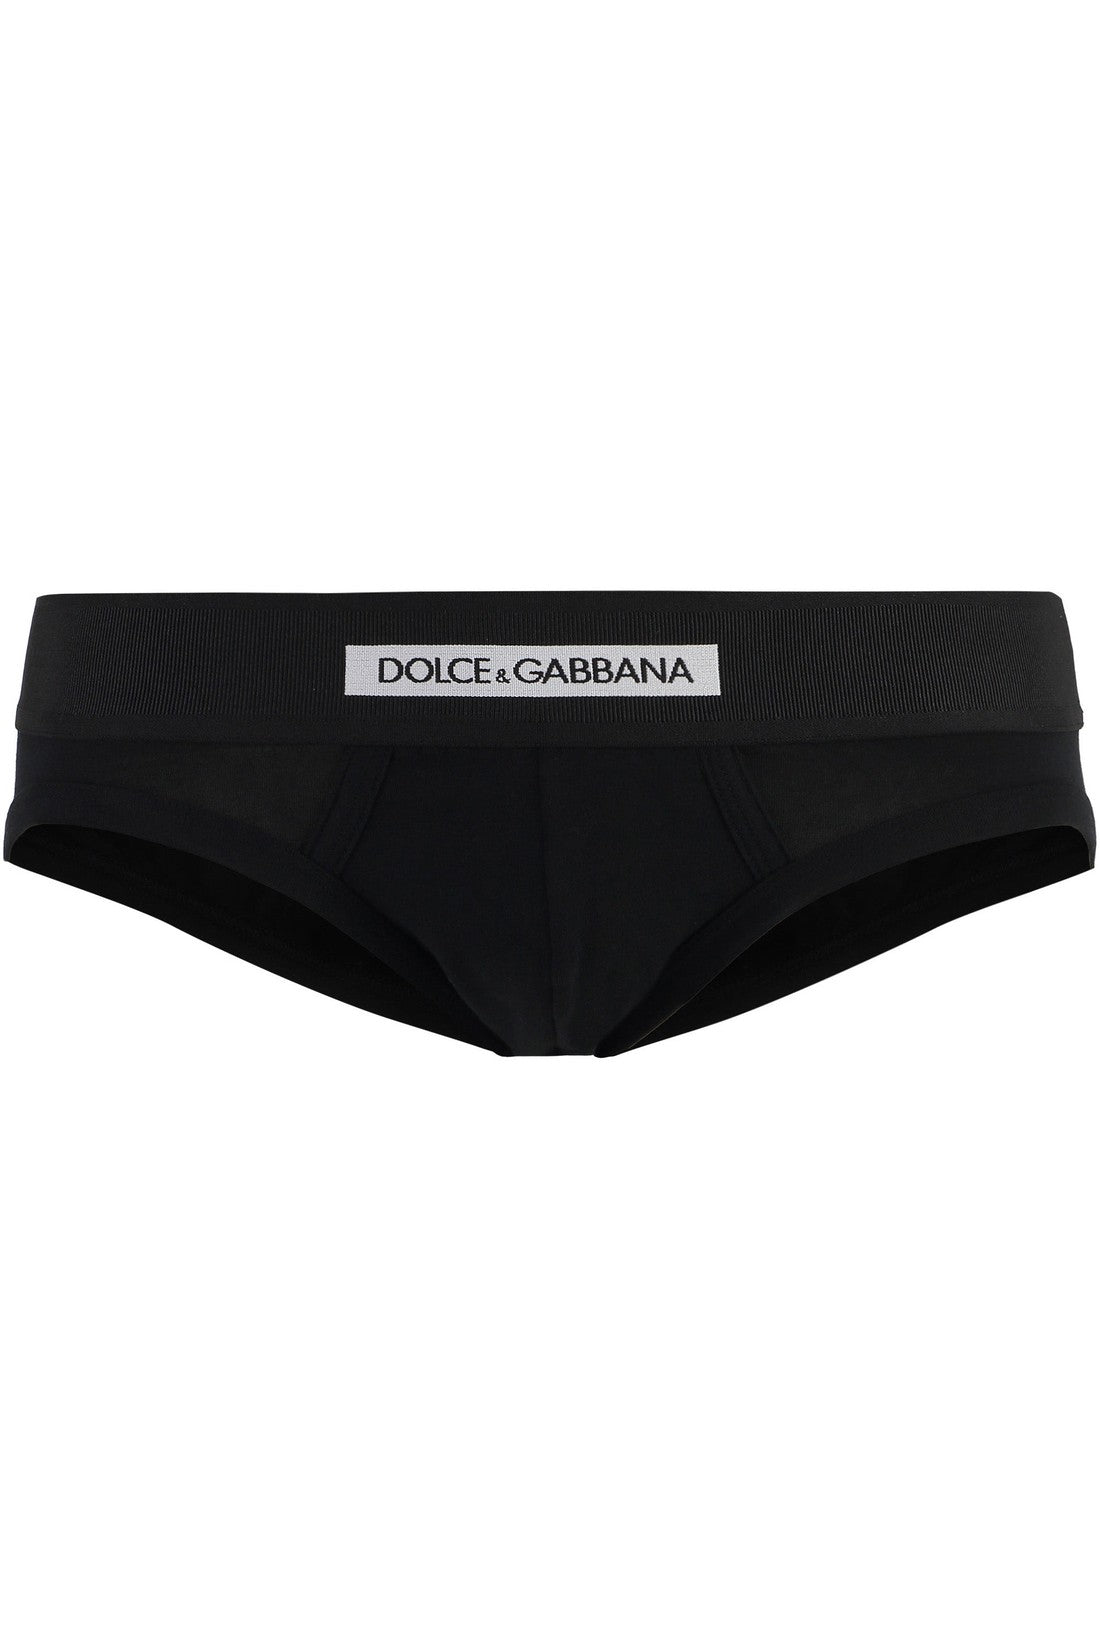 Dolce & Gabbana-OUTLET-SALE-Plain color briefs-ARCHIVIST